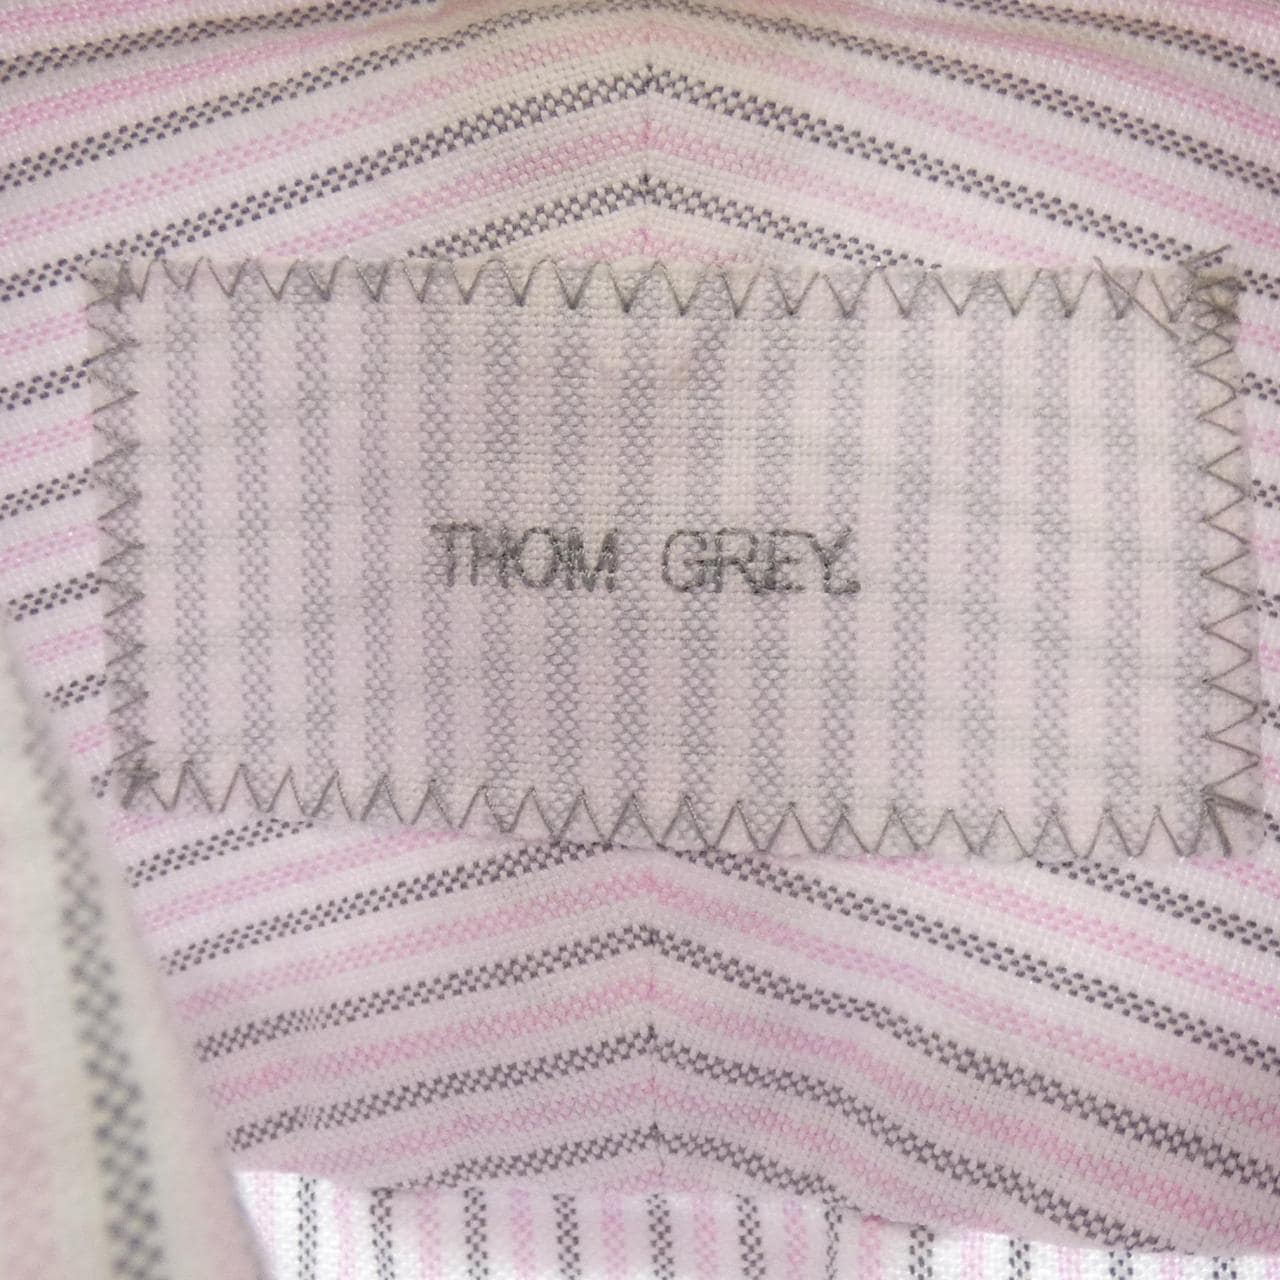 汤姆格雷THOM GREY衬衫